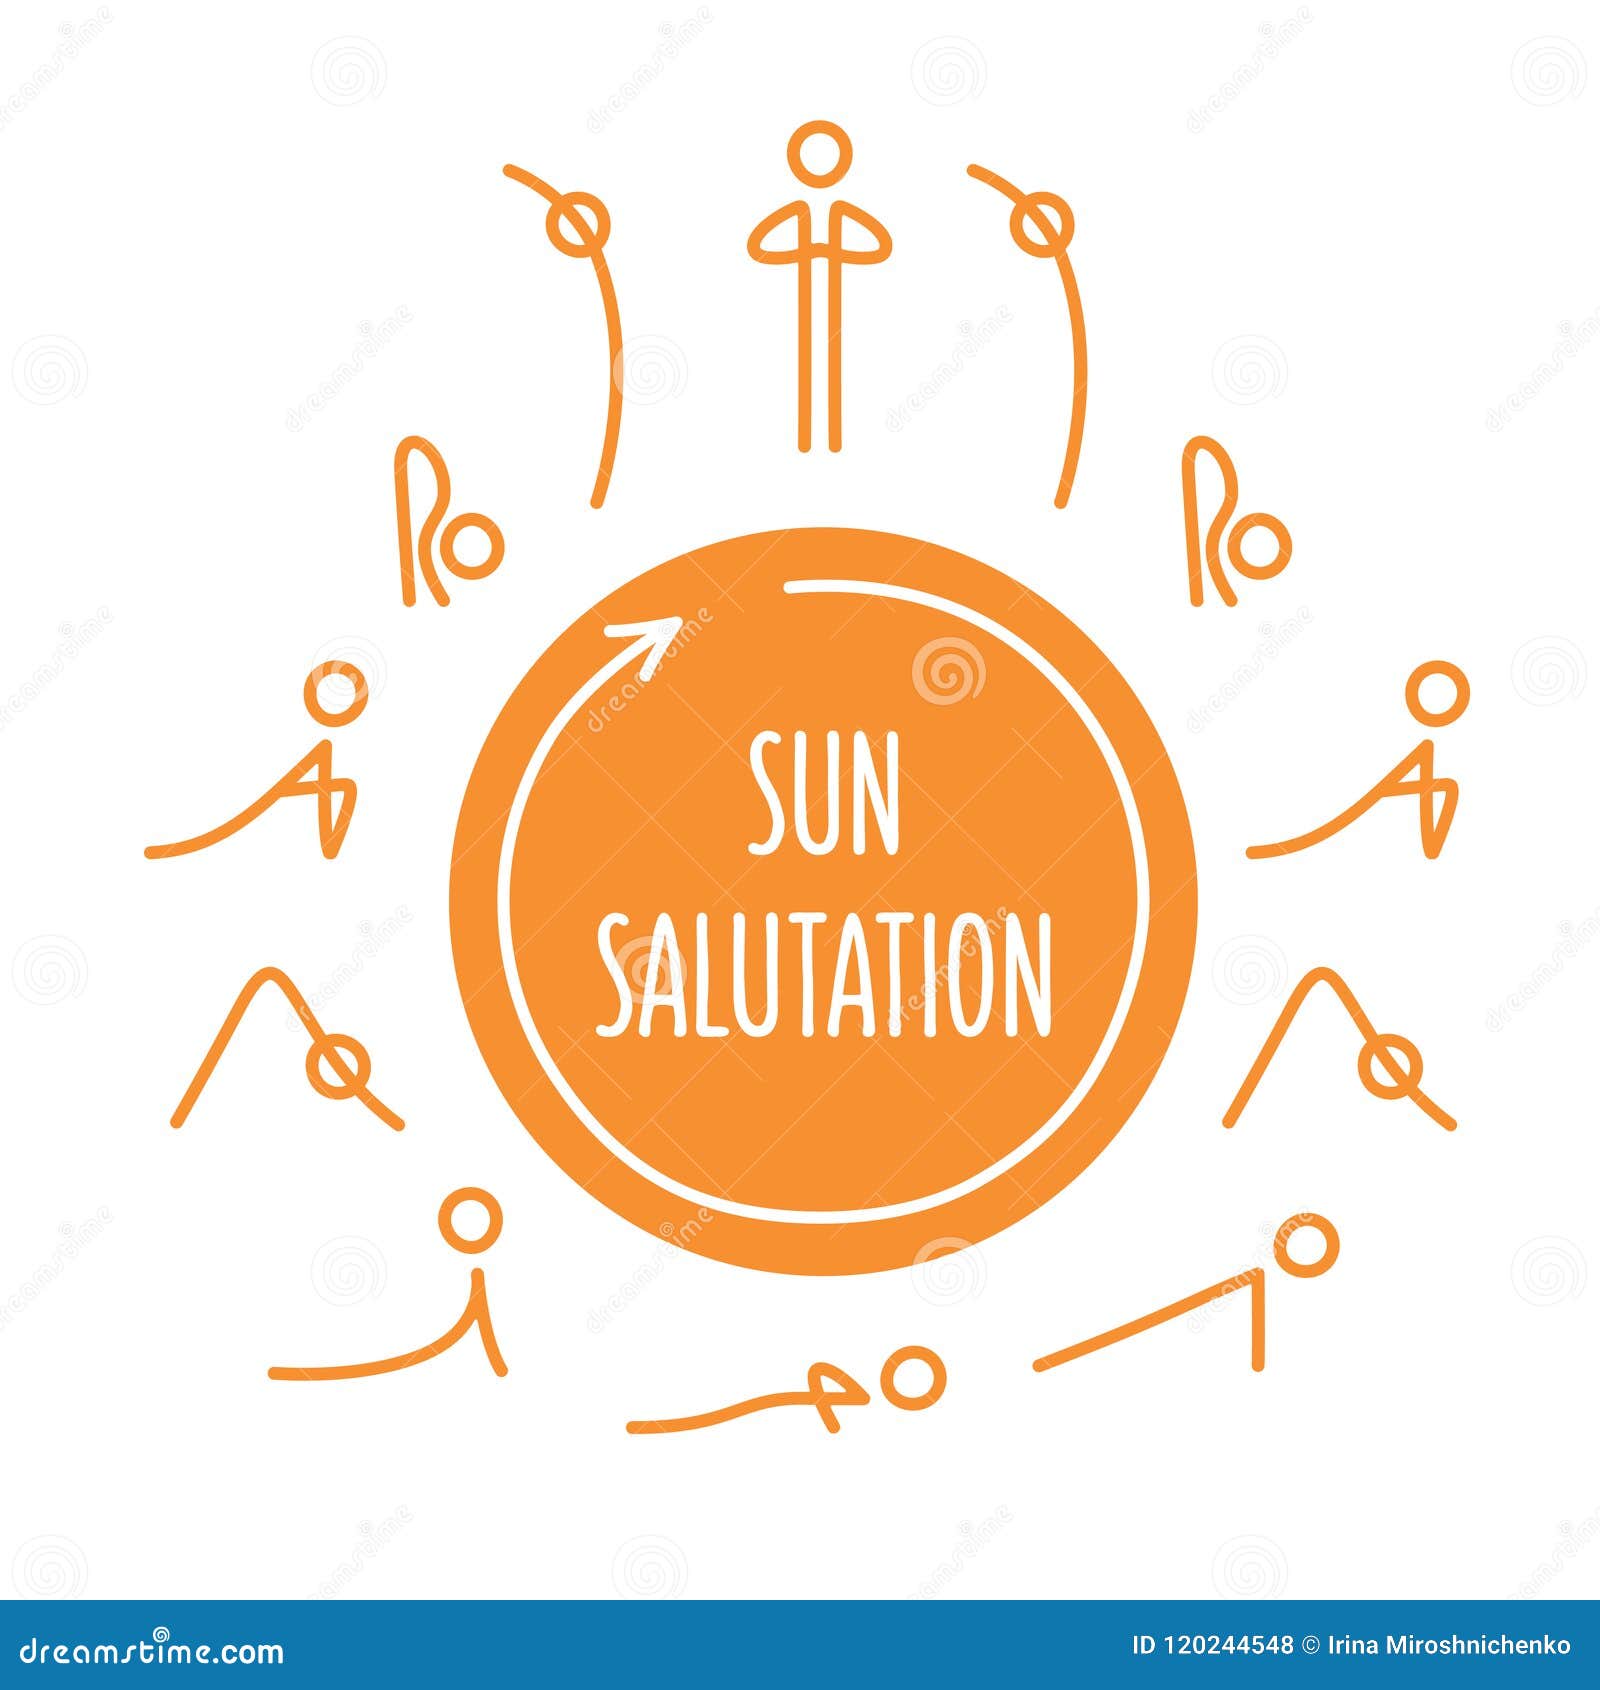 Sun Salutation Chart